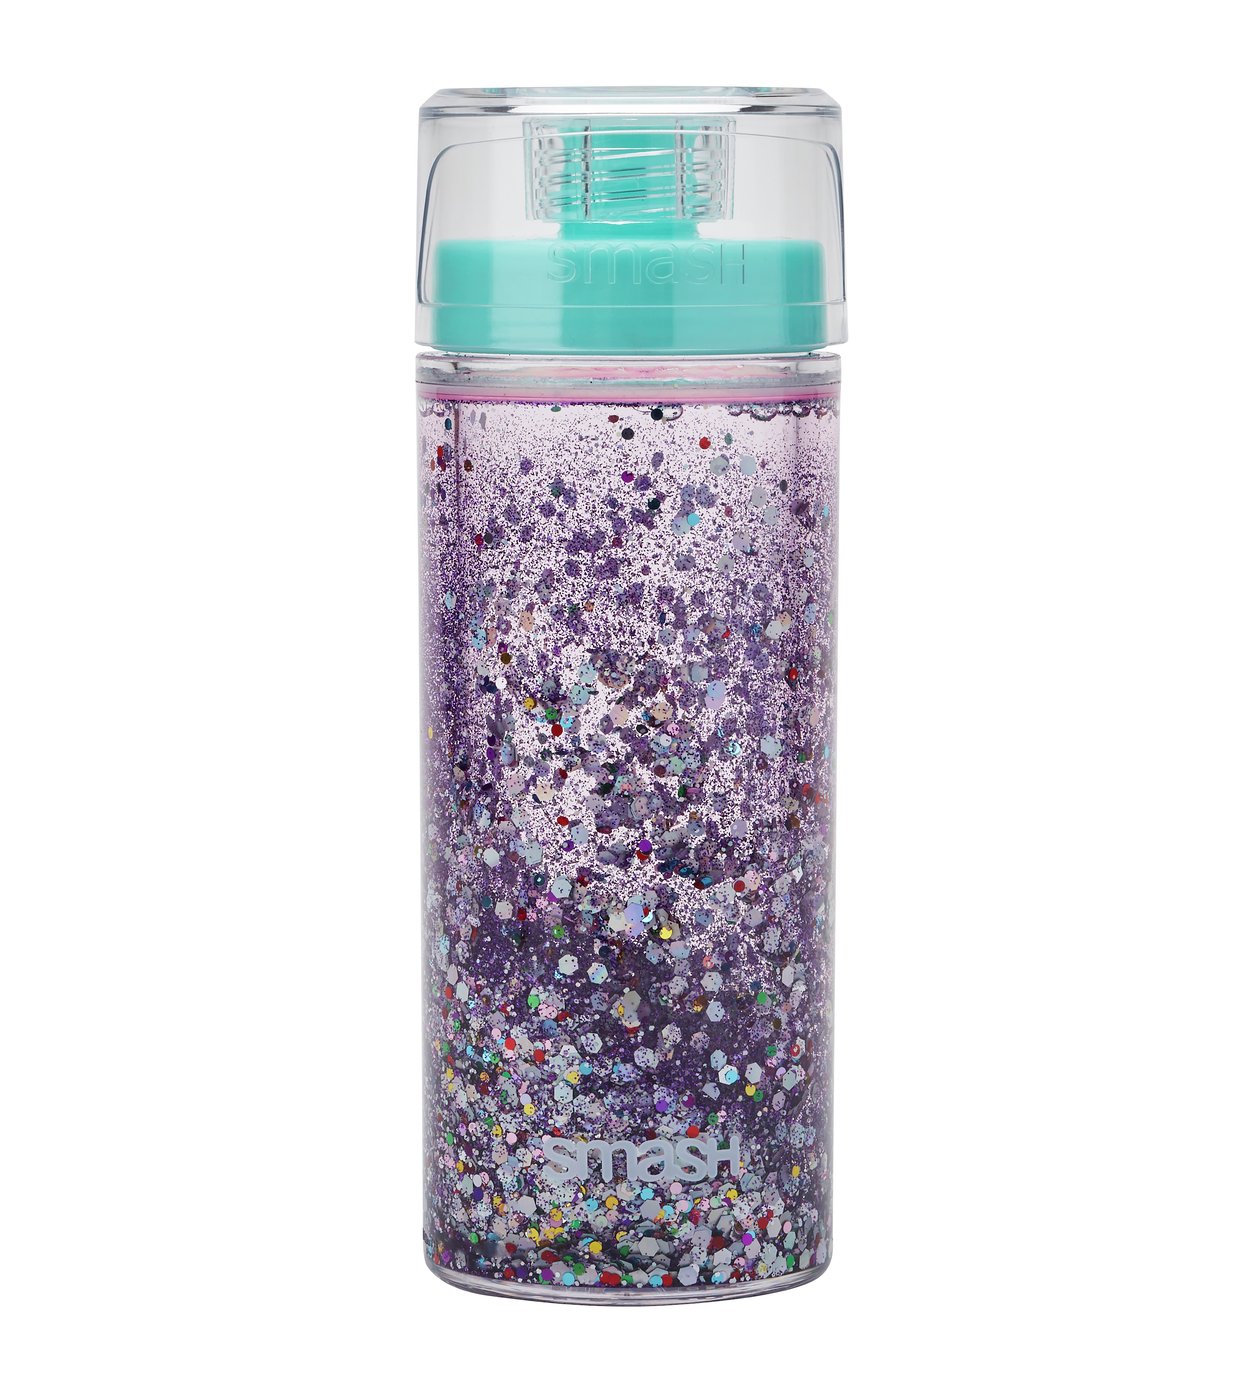 Smash Teal Glitter Lava Bottle - 375ml